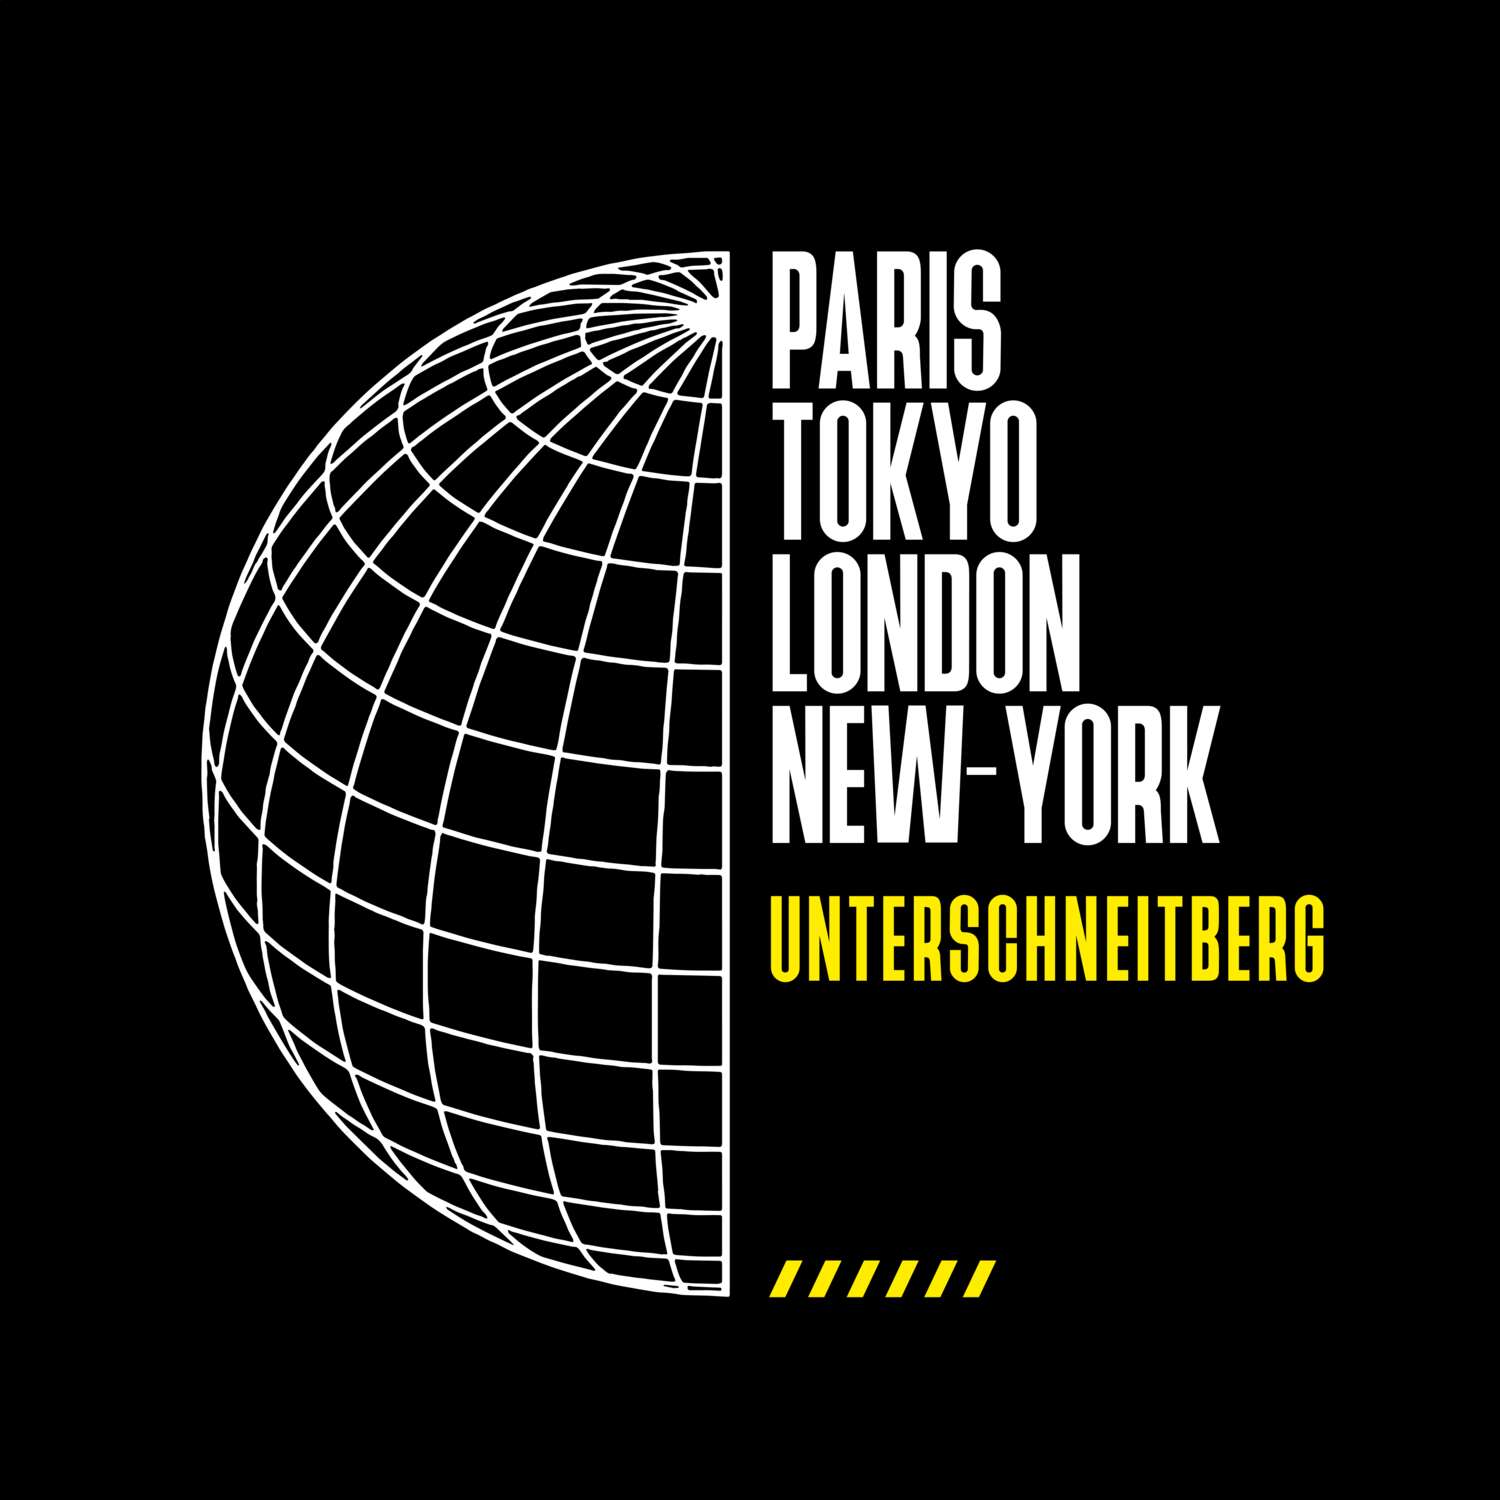 Unterschneitberg T-Shirt »Paris Tokyo London«